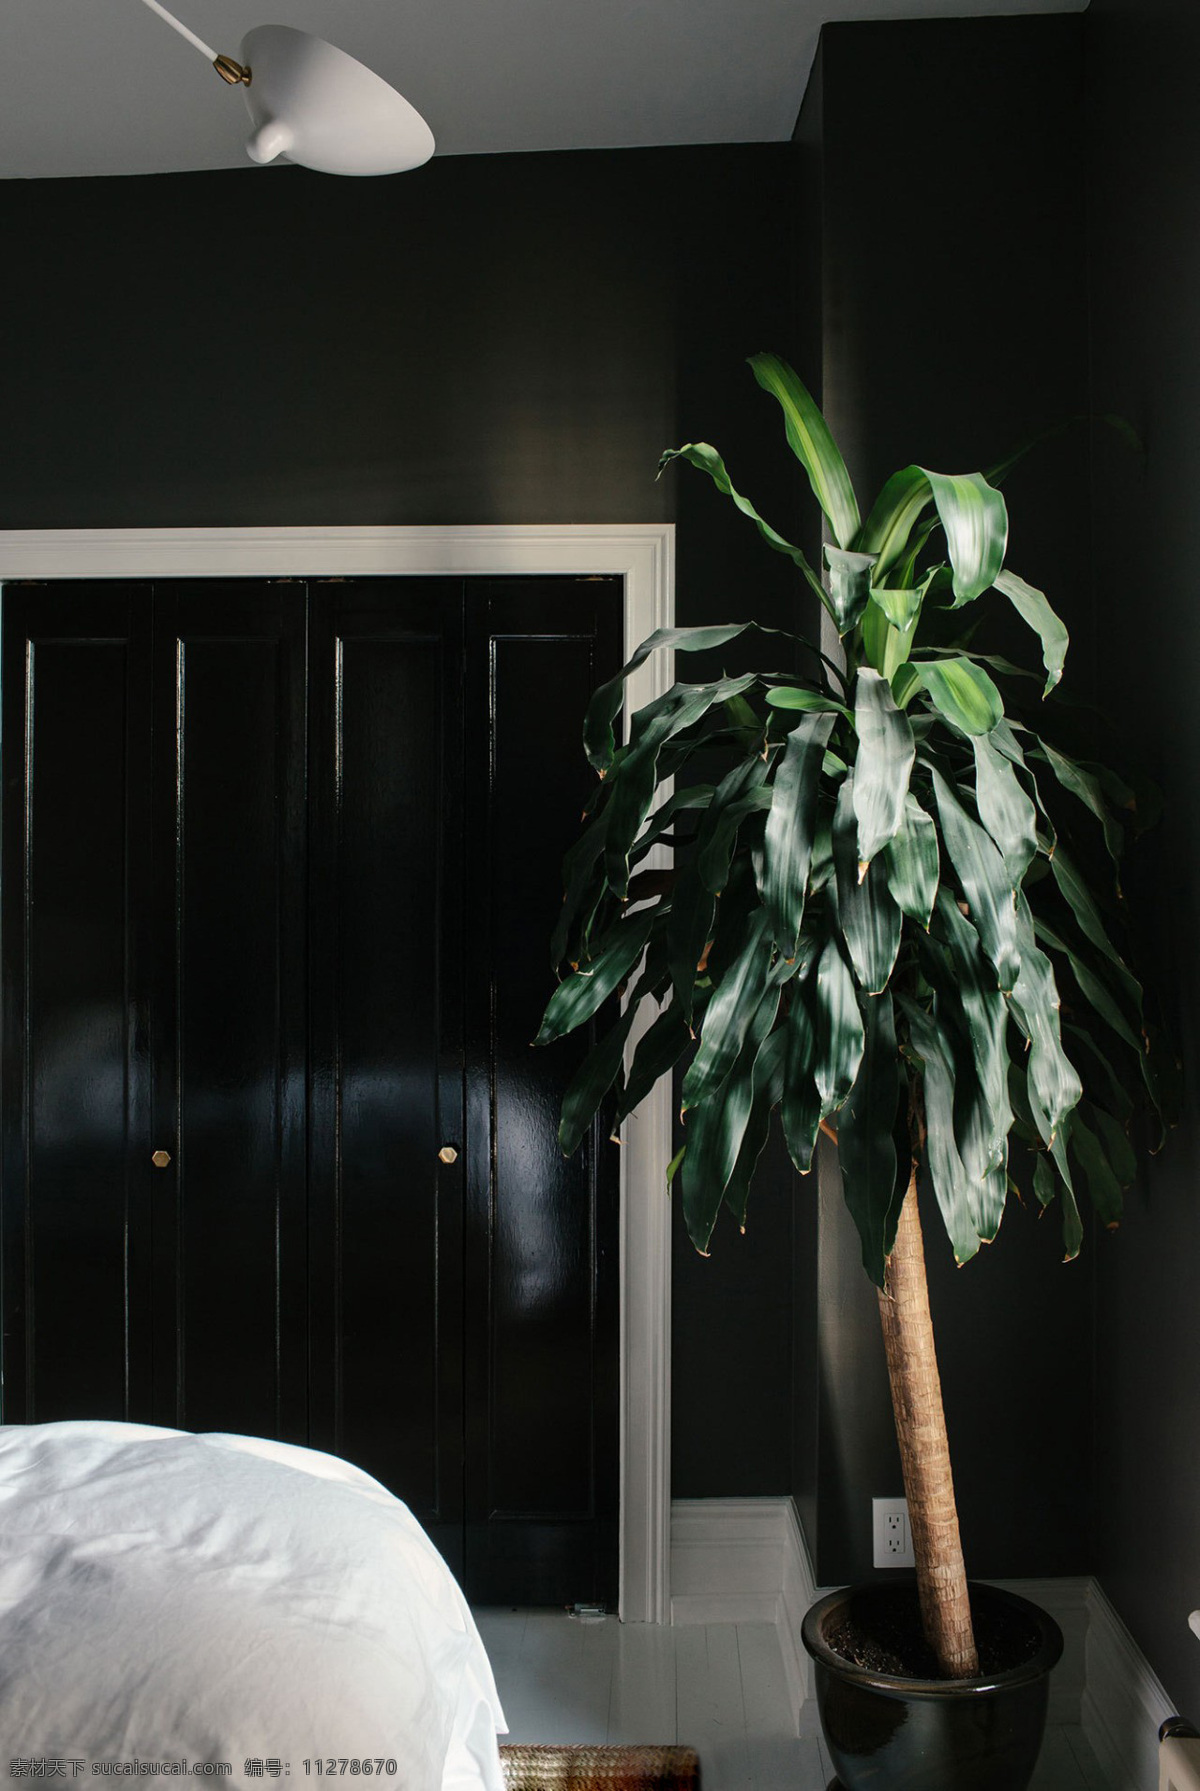 暗色 过道 盆栽 植物 装修 效果图 软装效果图 室内设计 展示效果 房间设计家装 家具